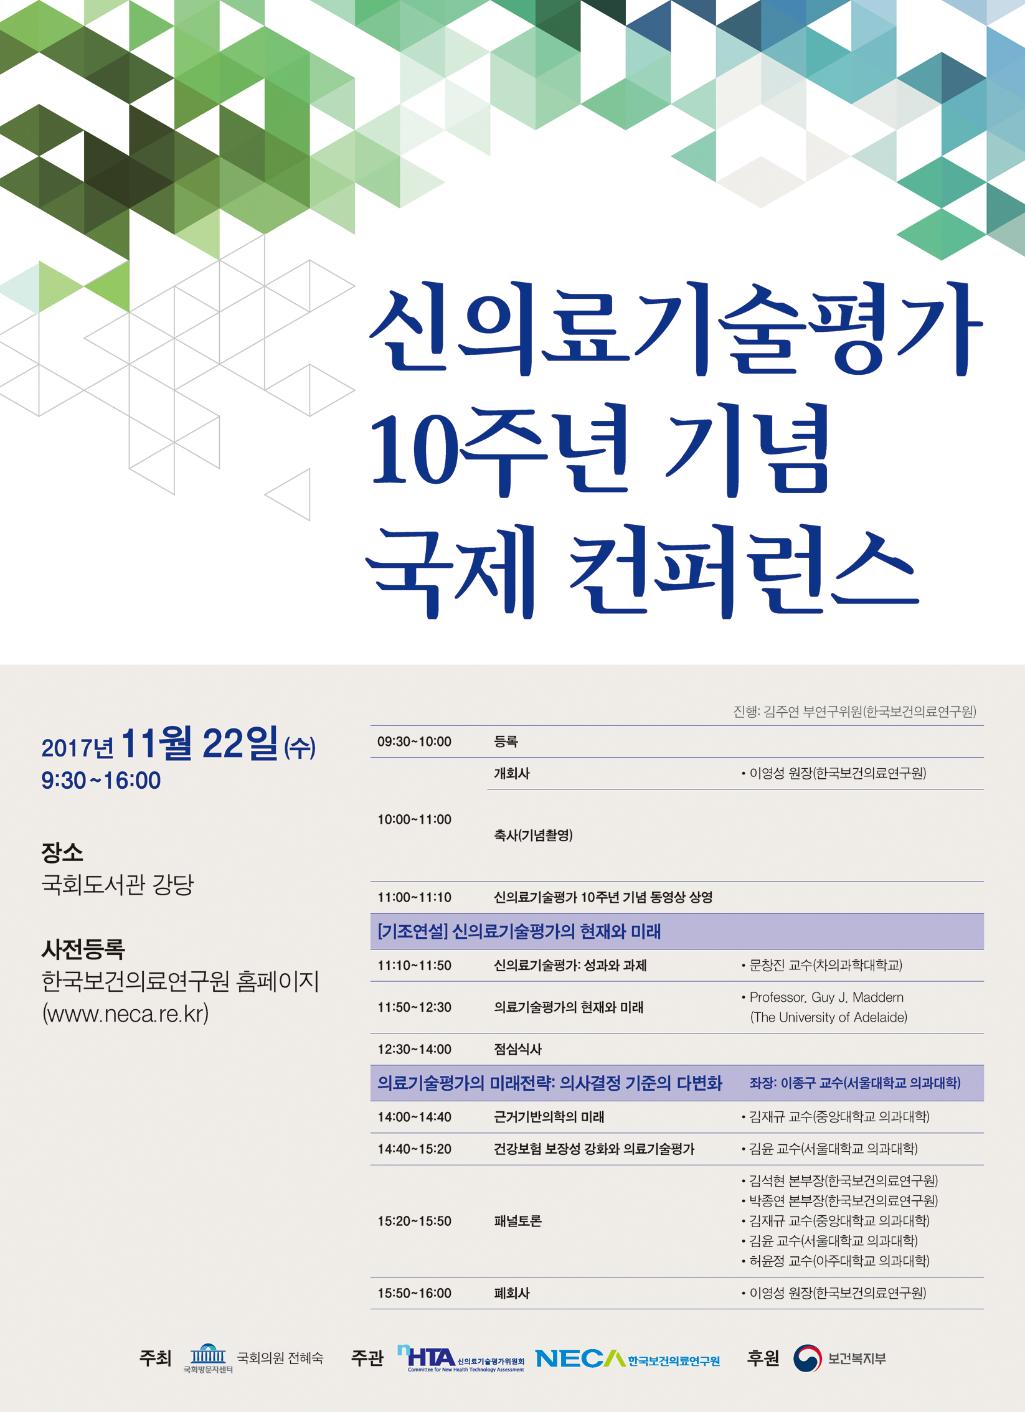 2017년 제3회(24차) NECA EBH Forum 개최 안내